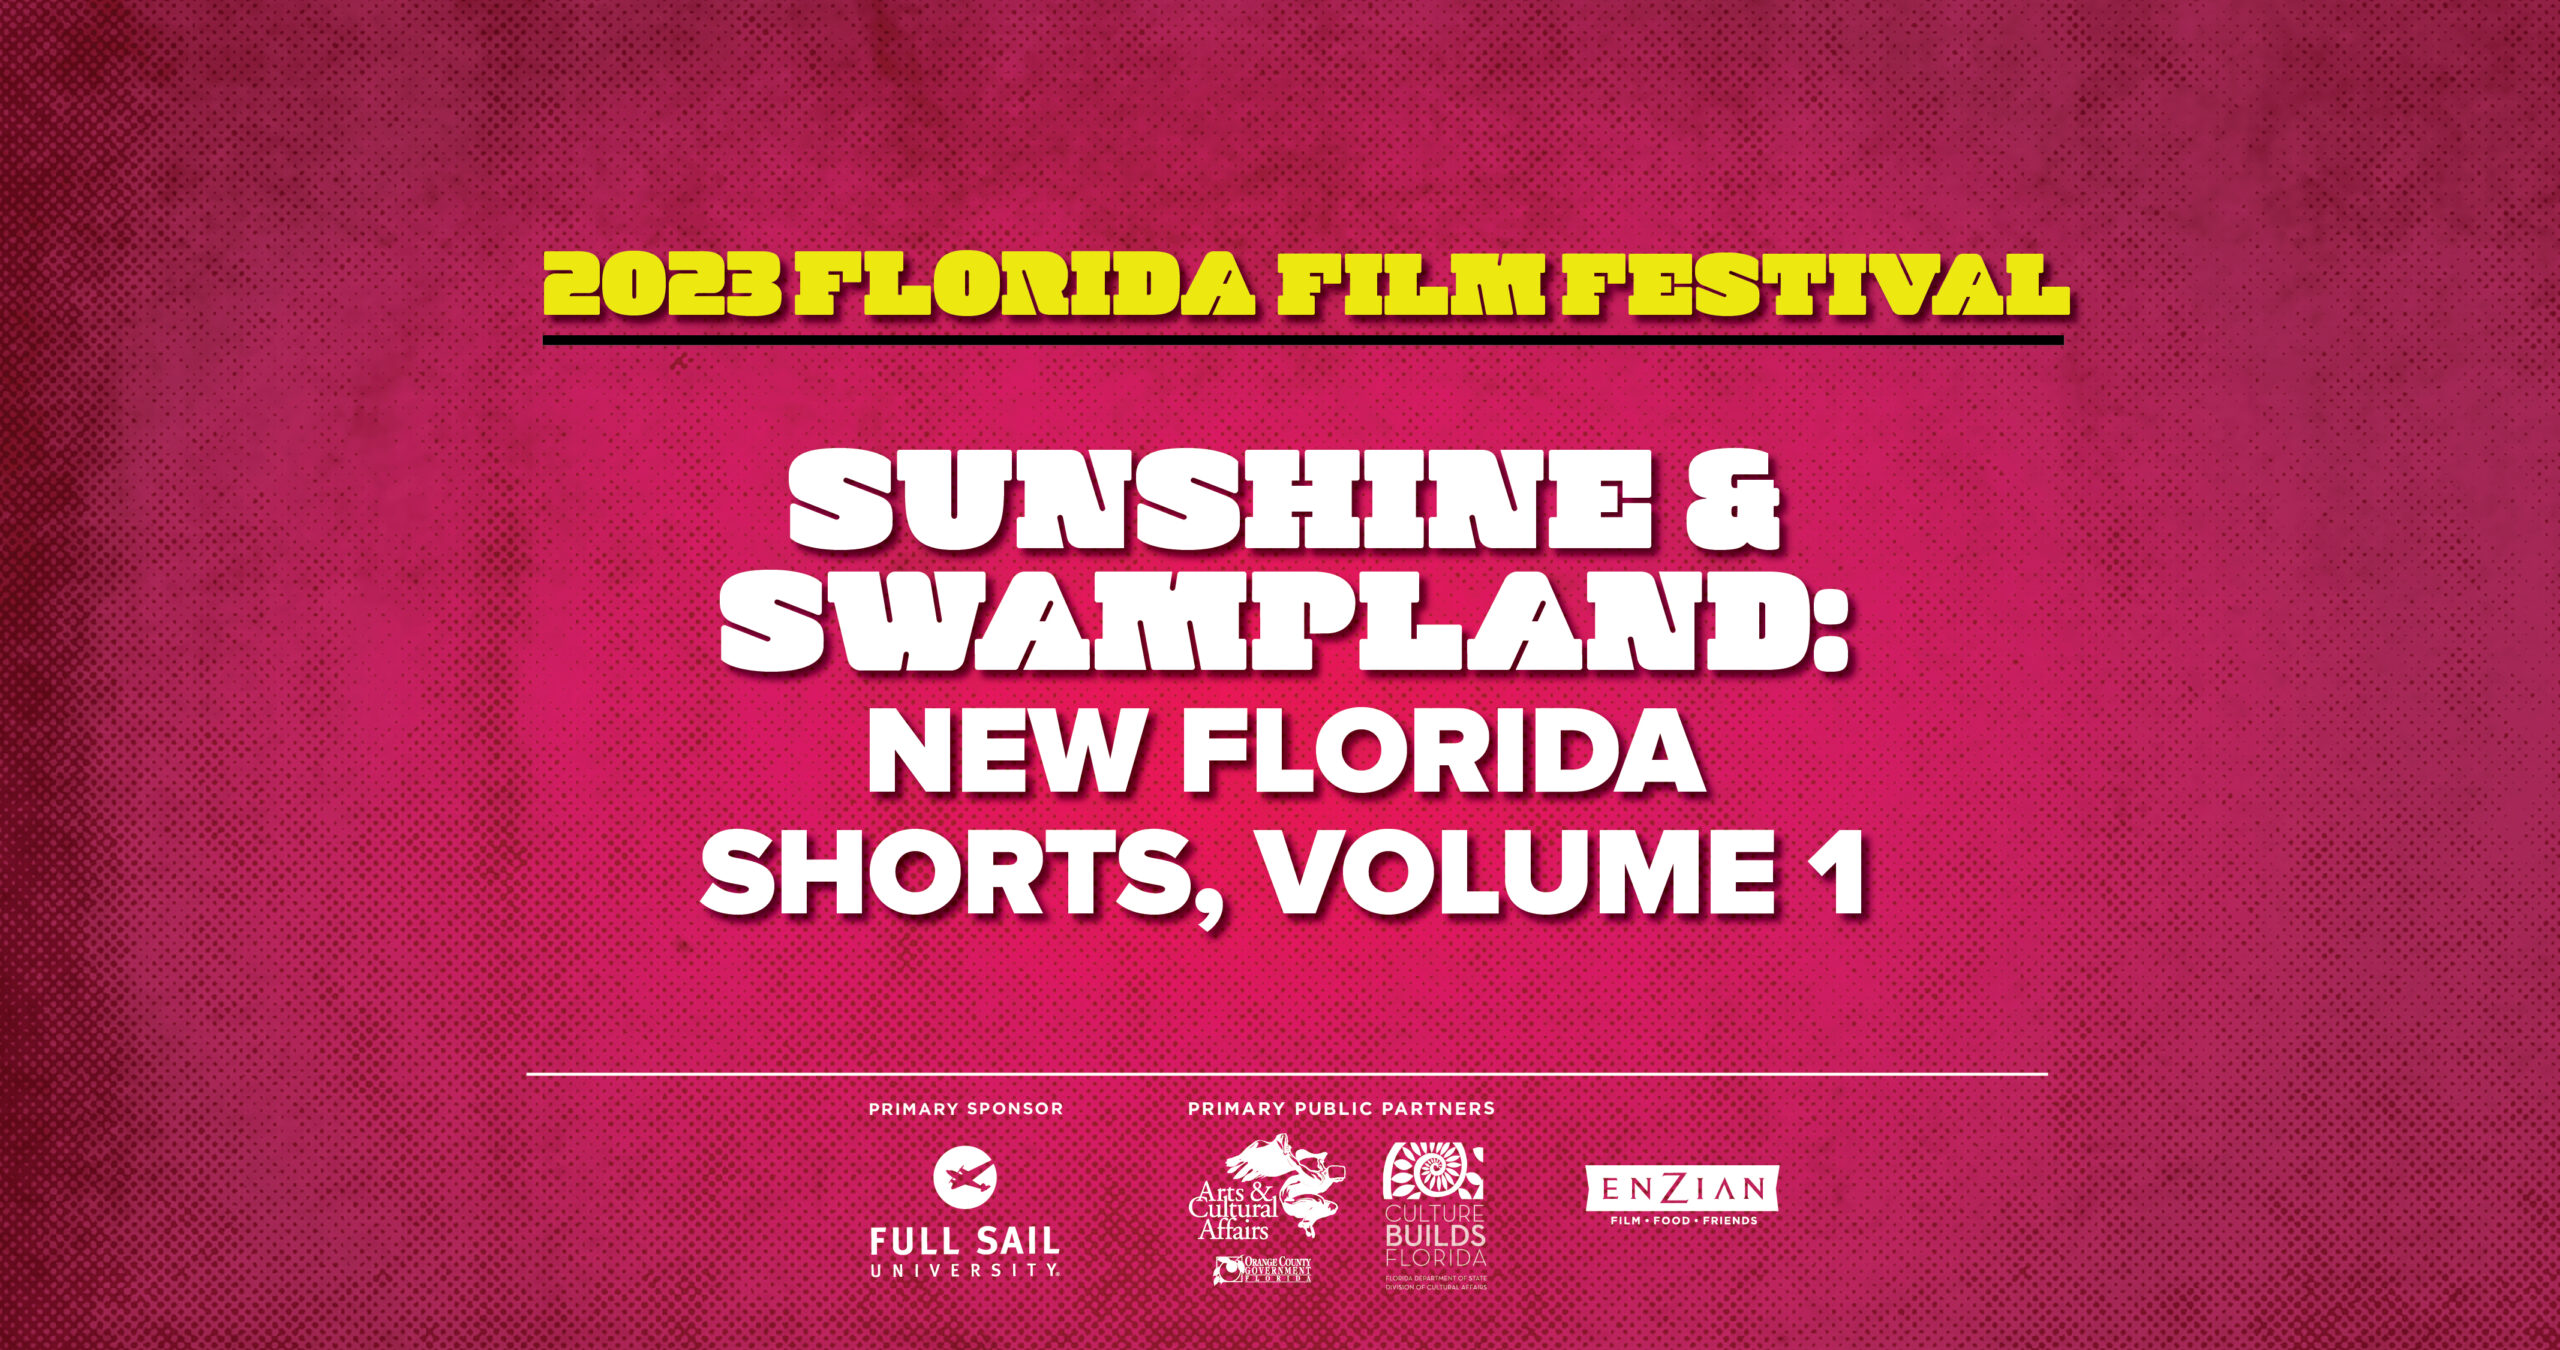 Sunshine & Swampland: New Florida Shorts, Volume 1